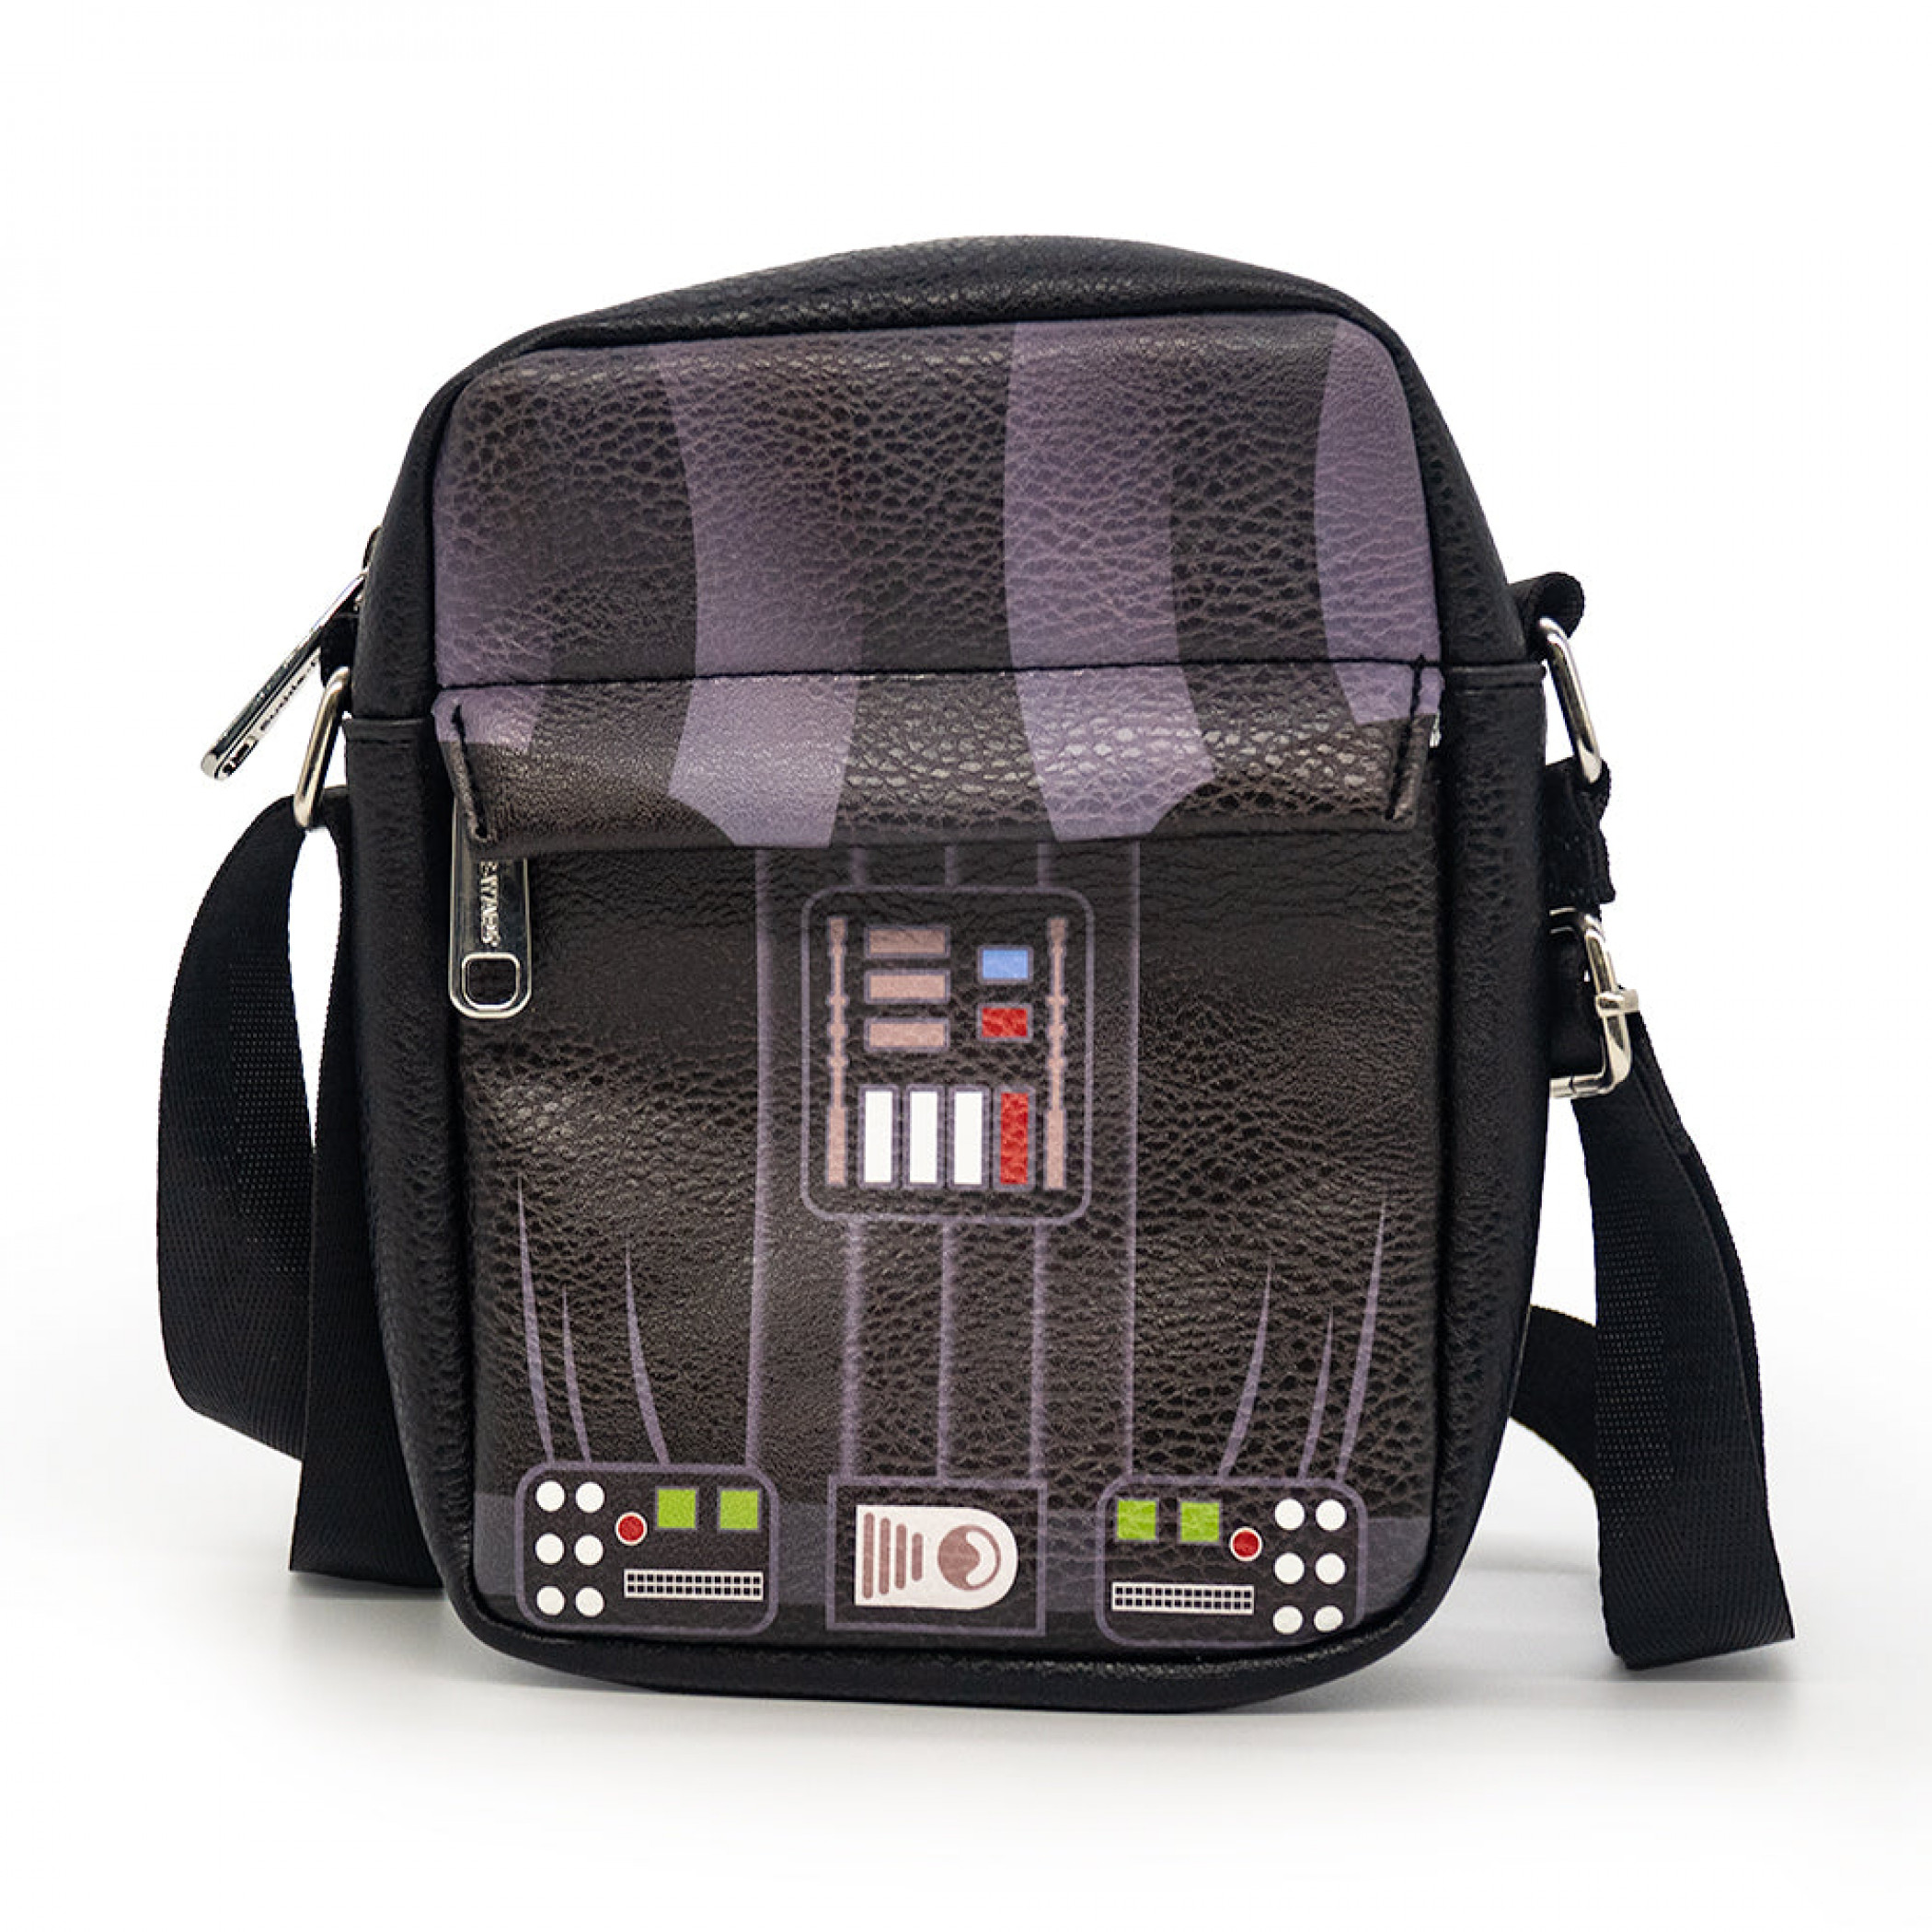 Star Wars Darth Vader Cosplay Crossbody Bag